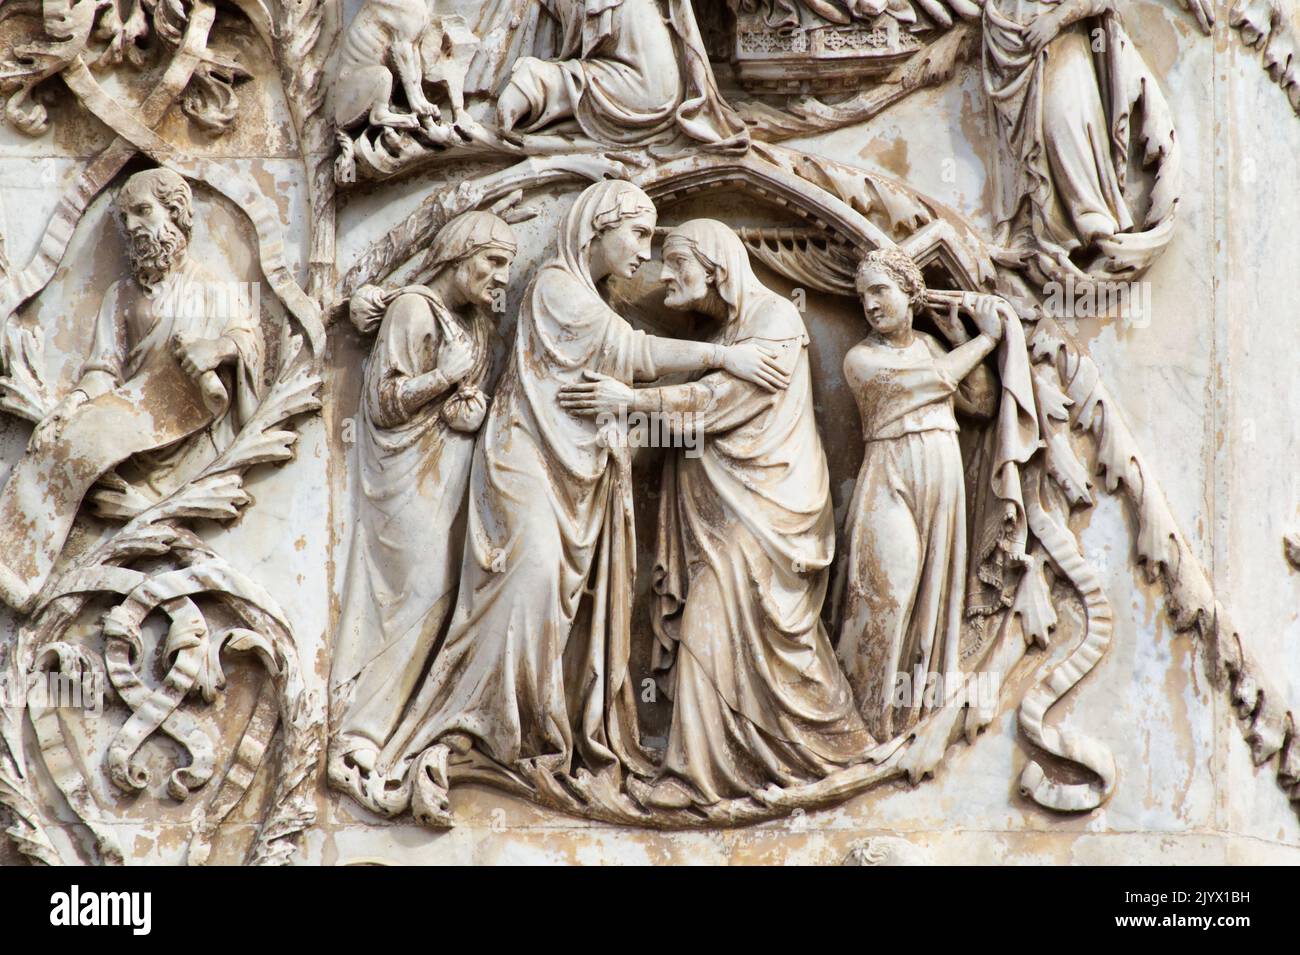 Maria visita la cugina Elisabetta prima della nascita di Giovanni Battista - bassorilievo dal 3th° pilastro - facciata della cattedrale di Orvieto - Umbria - Italia Foto Stock